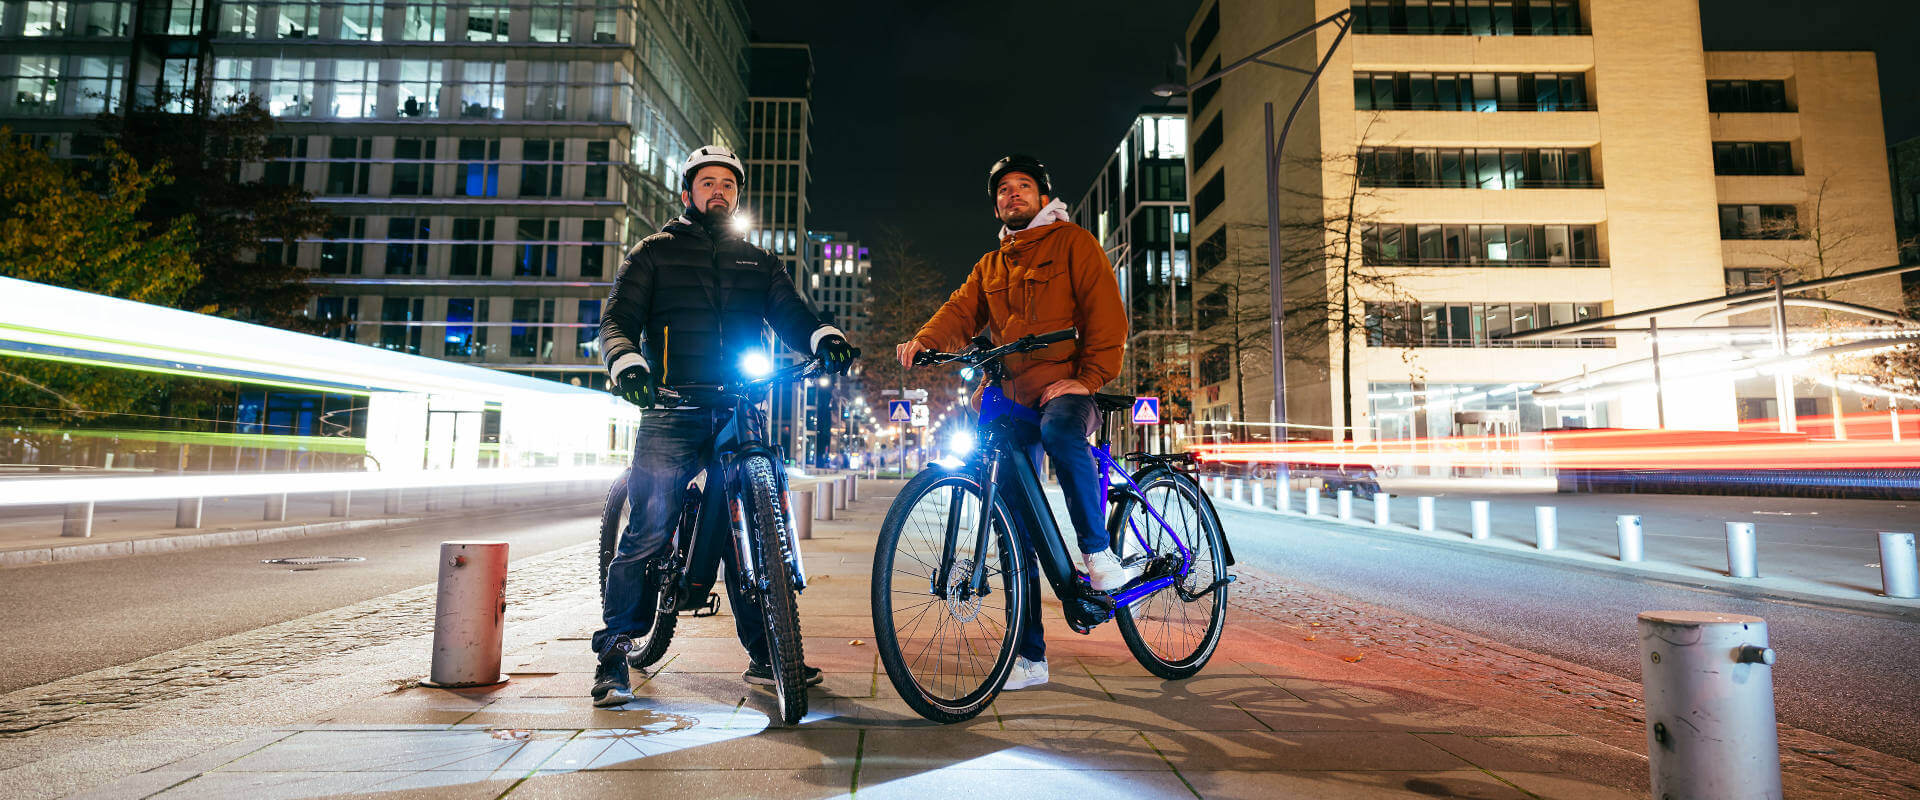 Mærk spændingen ved at cykle i byen om natten | Lifestyle